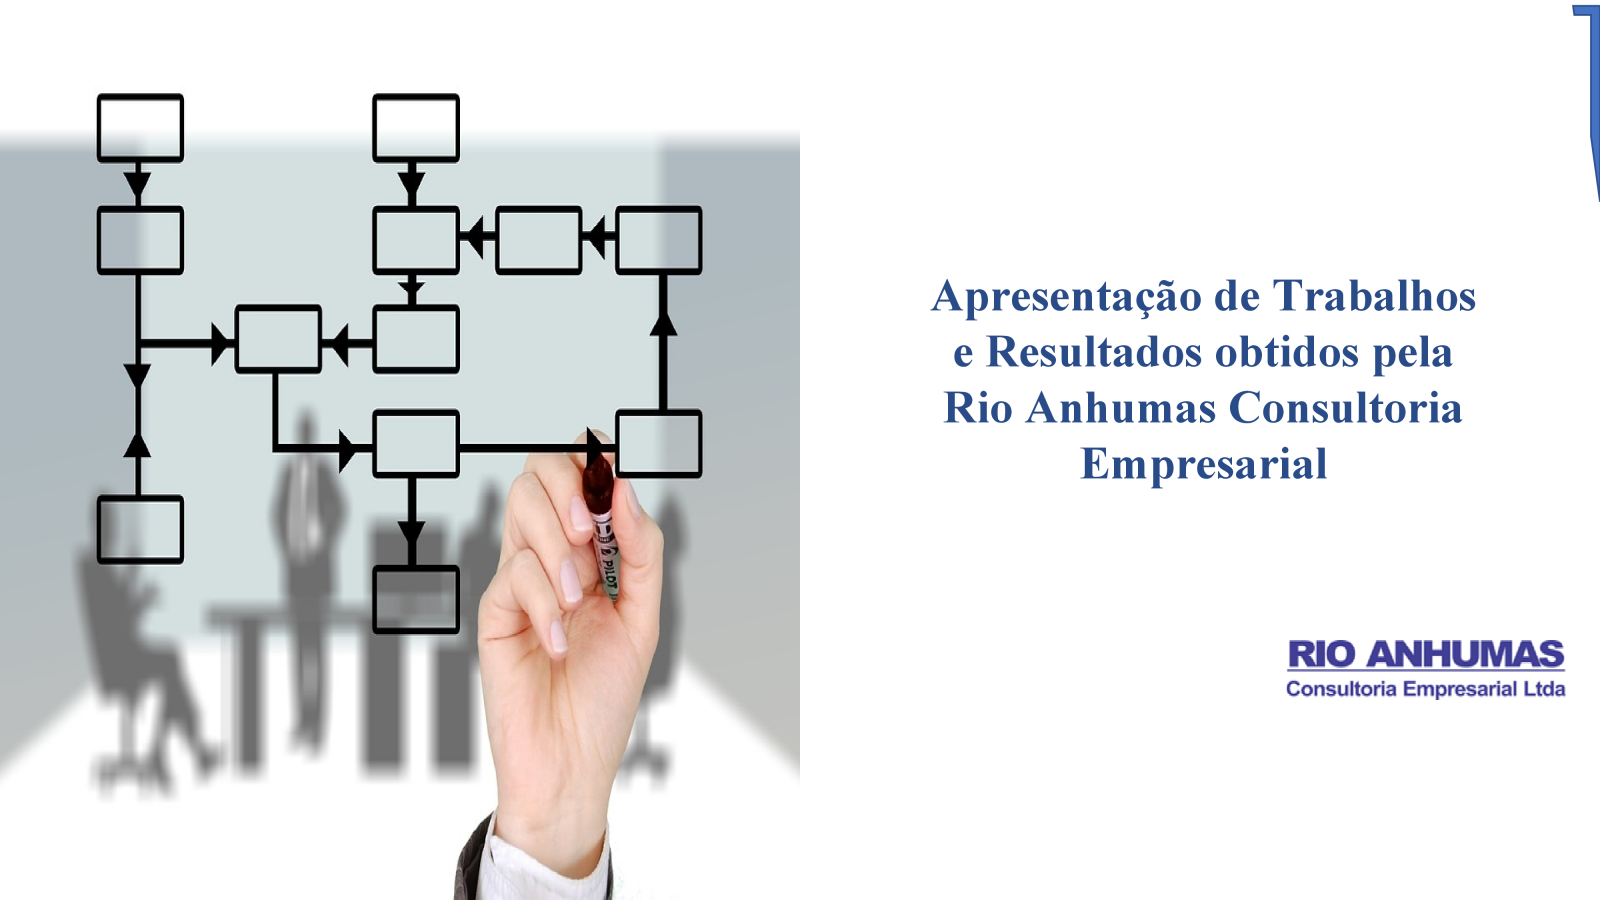 Apresentação de Trabalhos e Resultados Obtidos pela Rio Anhumas Consultoria Empresarial